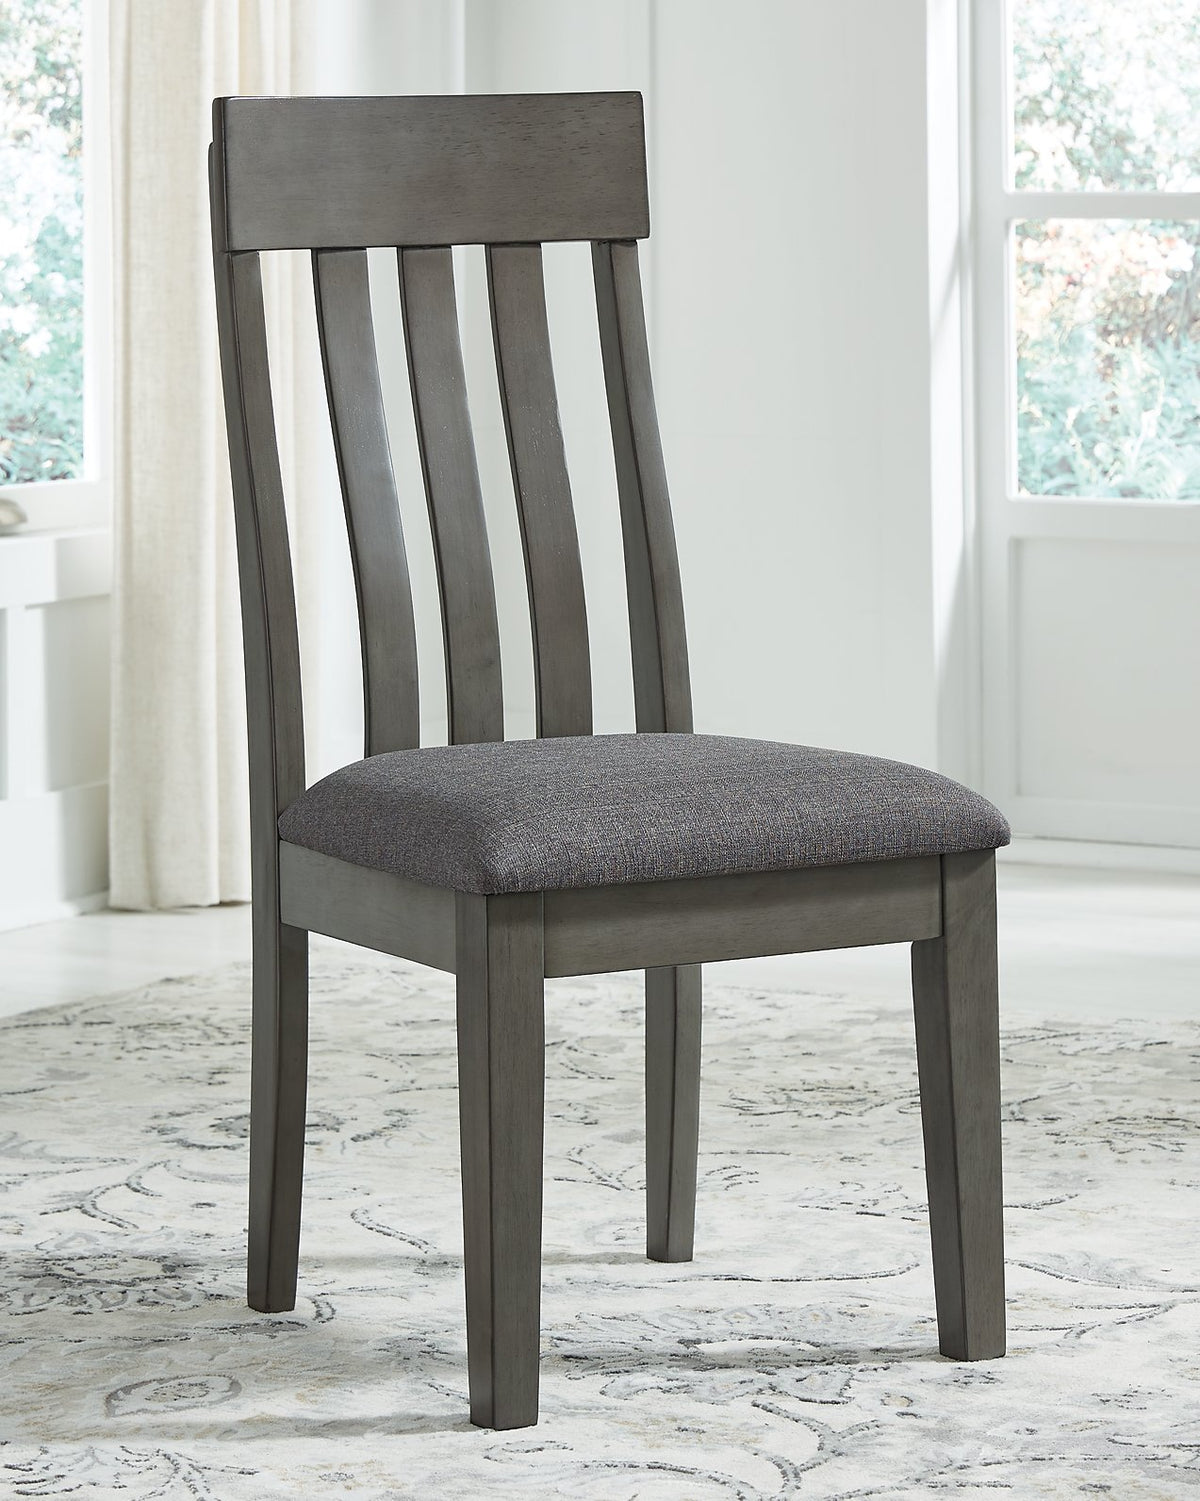 Hallanden Dining Chair - Half Price Furniture